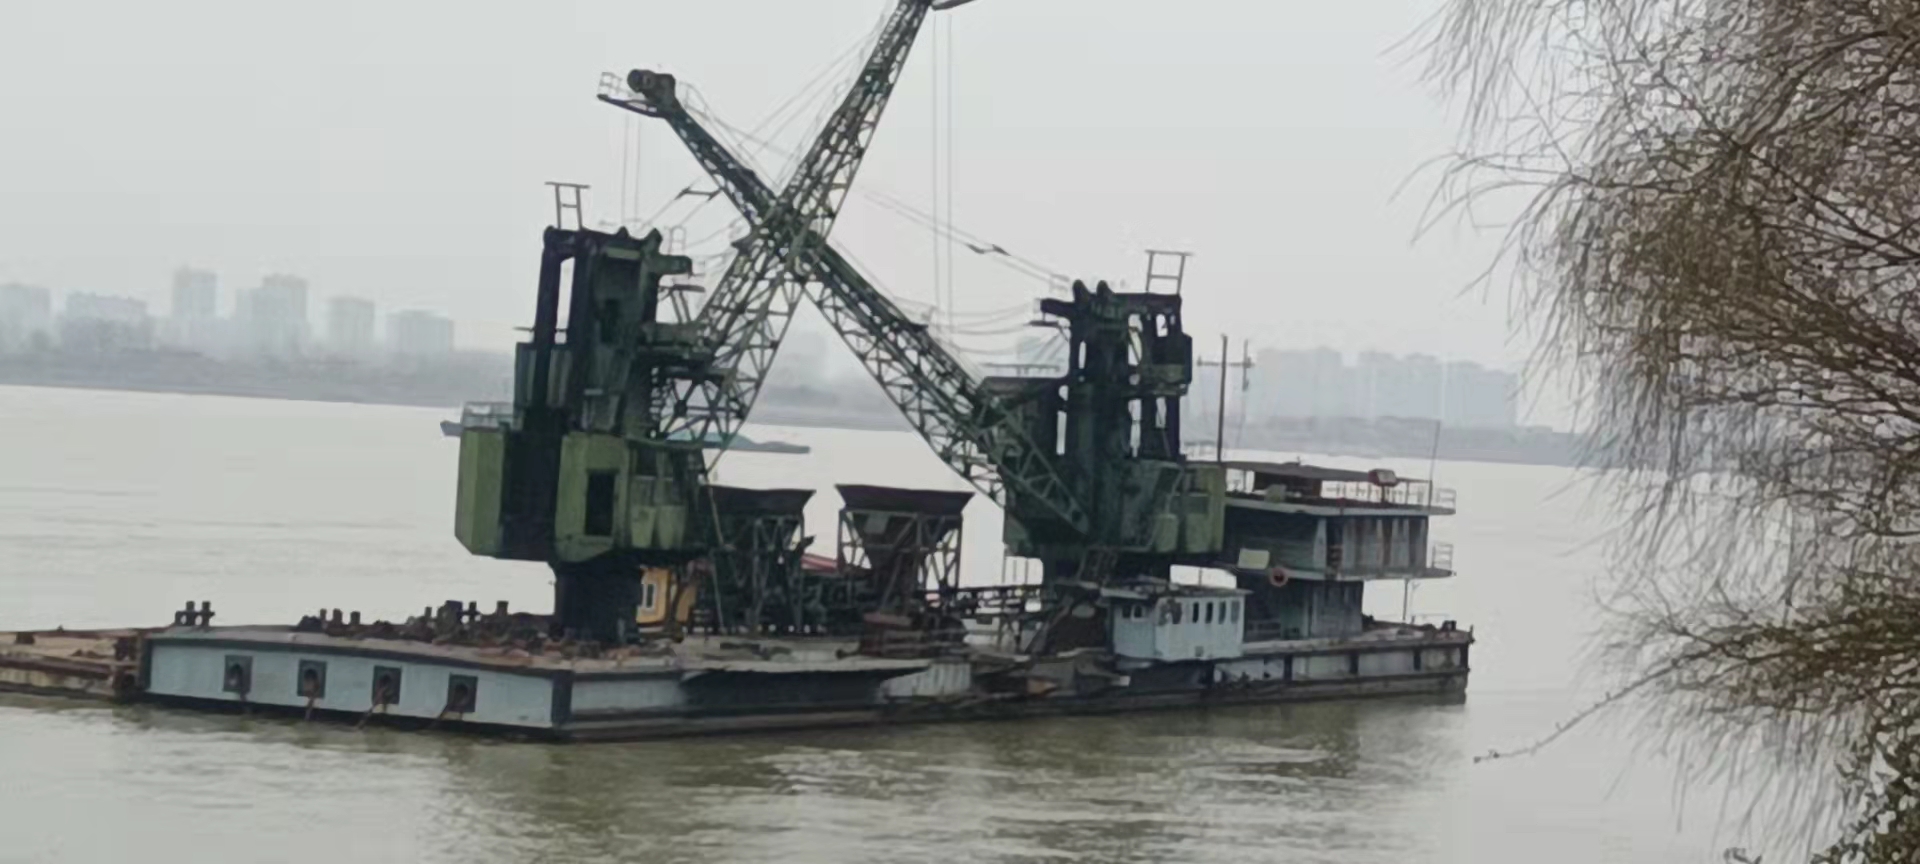 公司九江发电厂持有的报废“九电2号囤”趸船出售招标